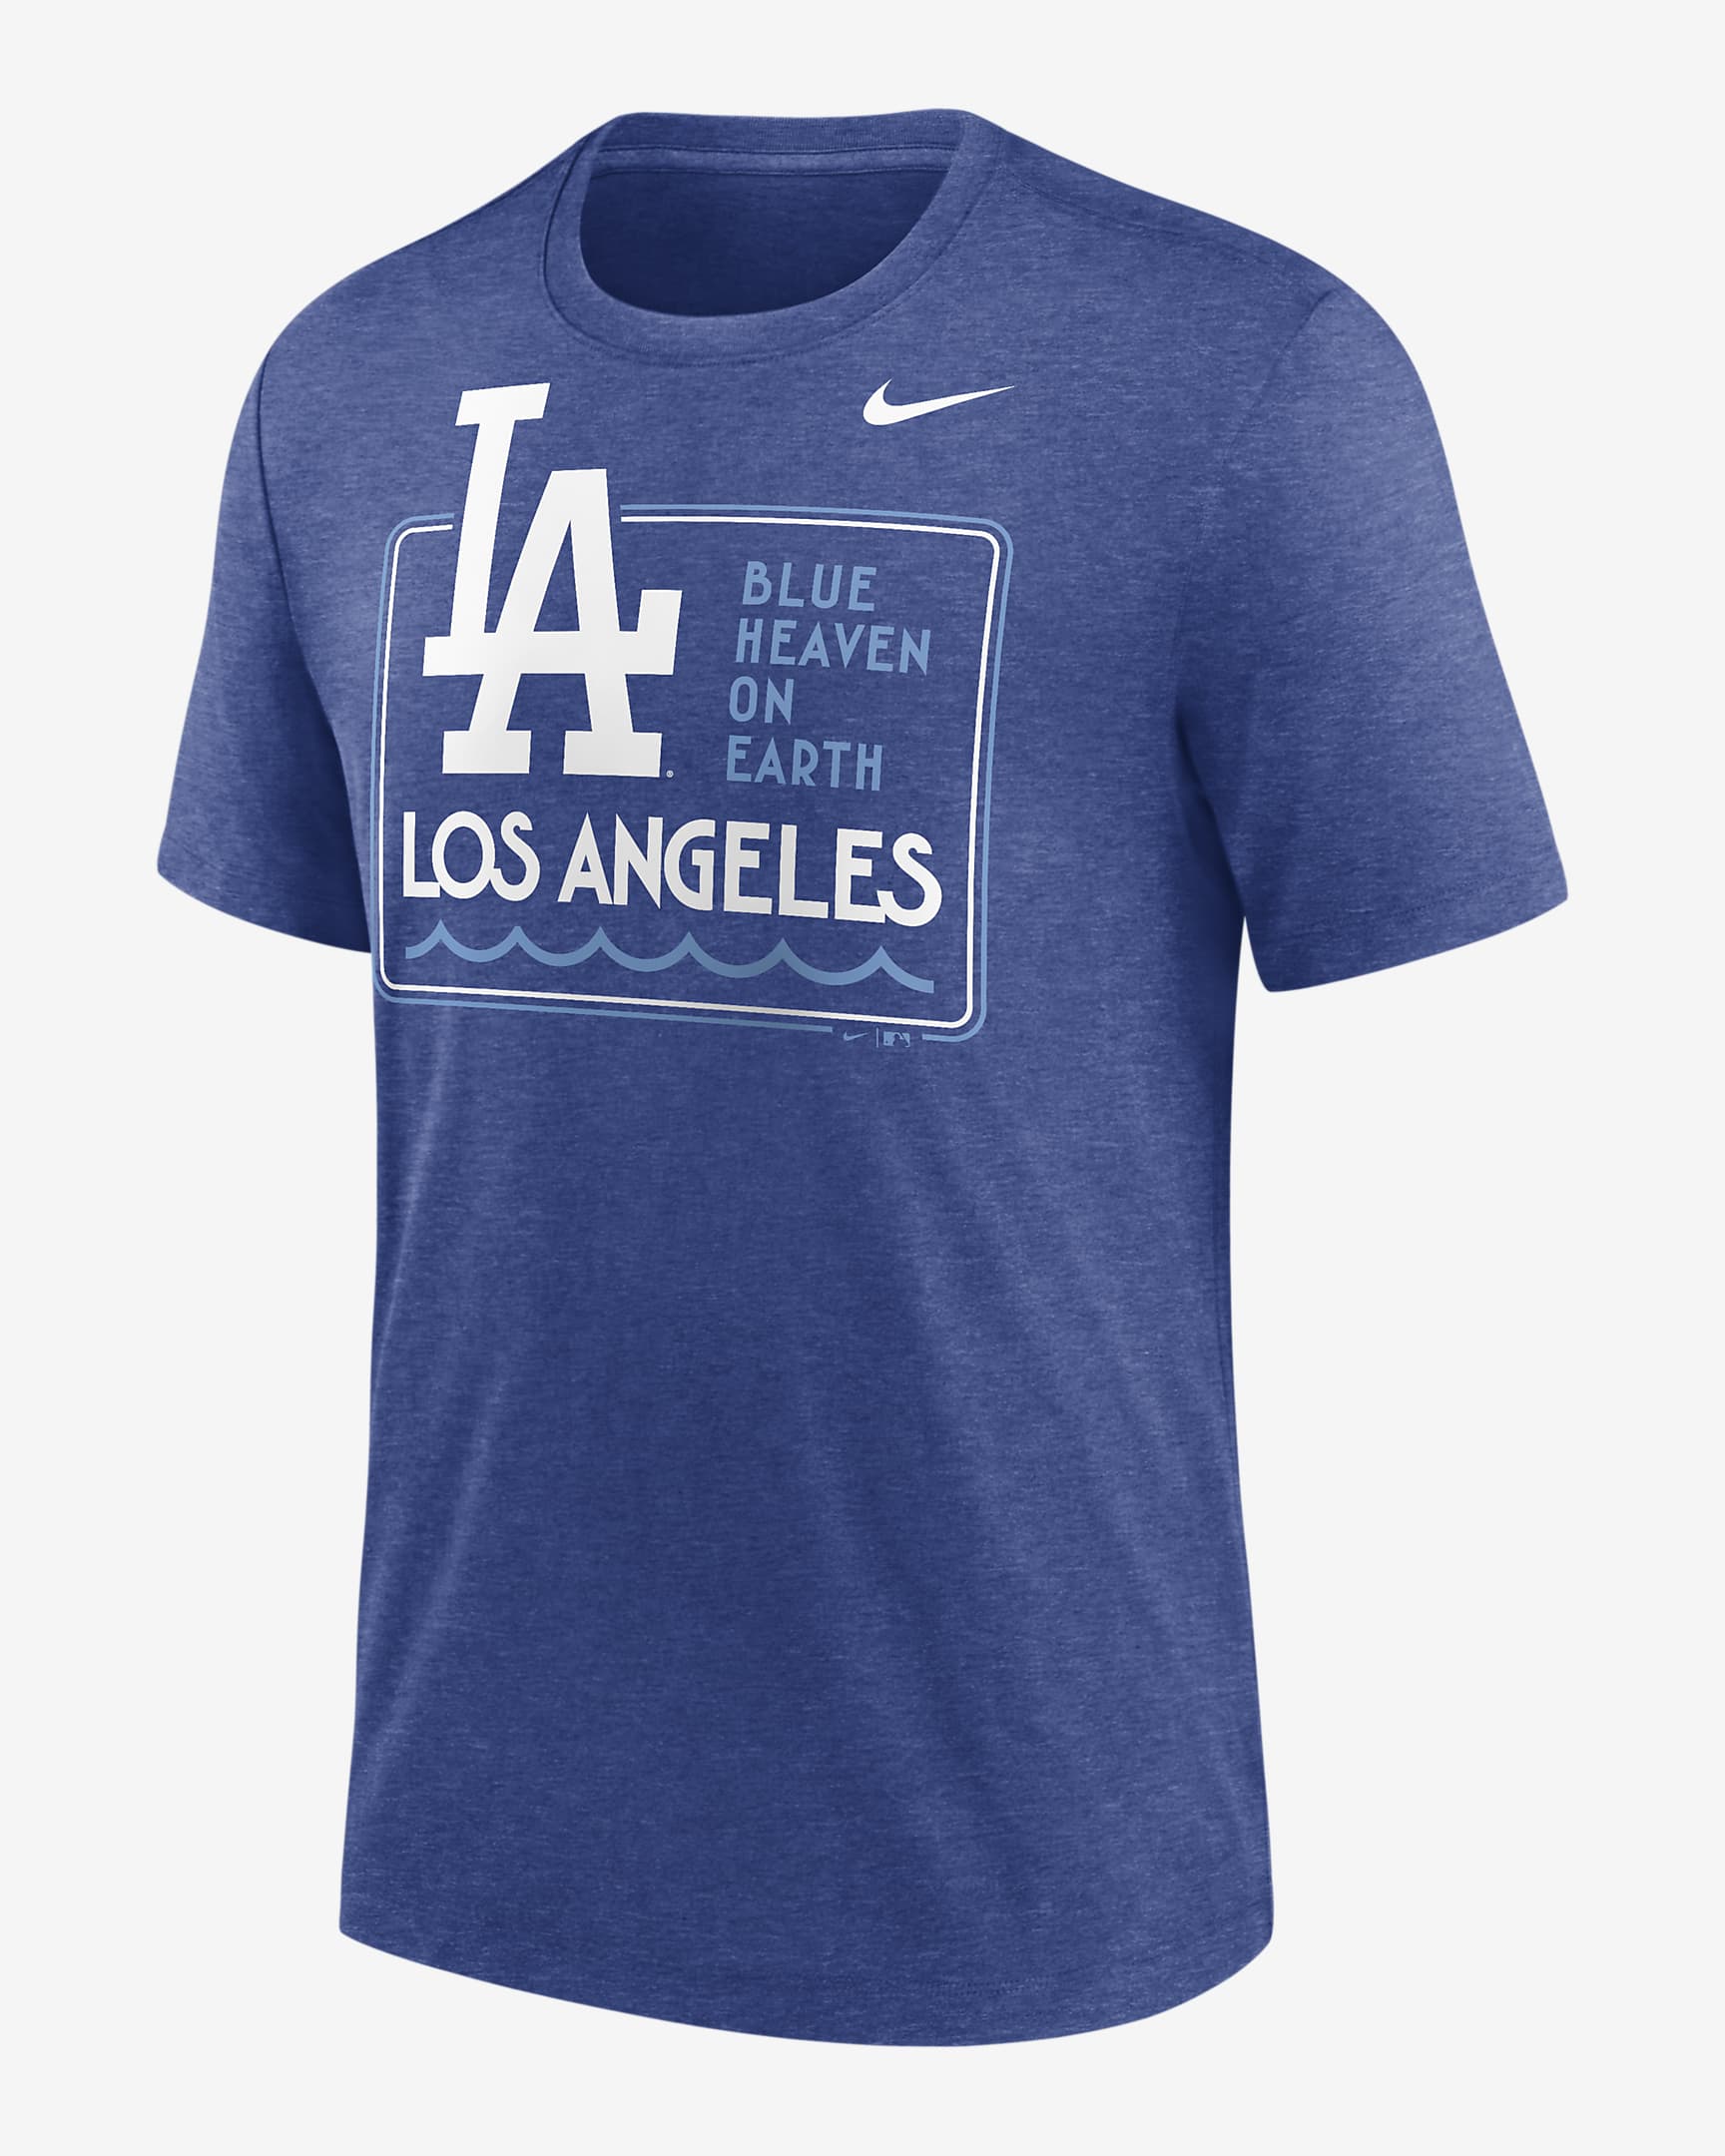 Playera Nike de la MLB para hombre Los Angeles Dodgers Hometown. Nike.com